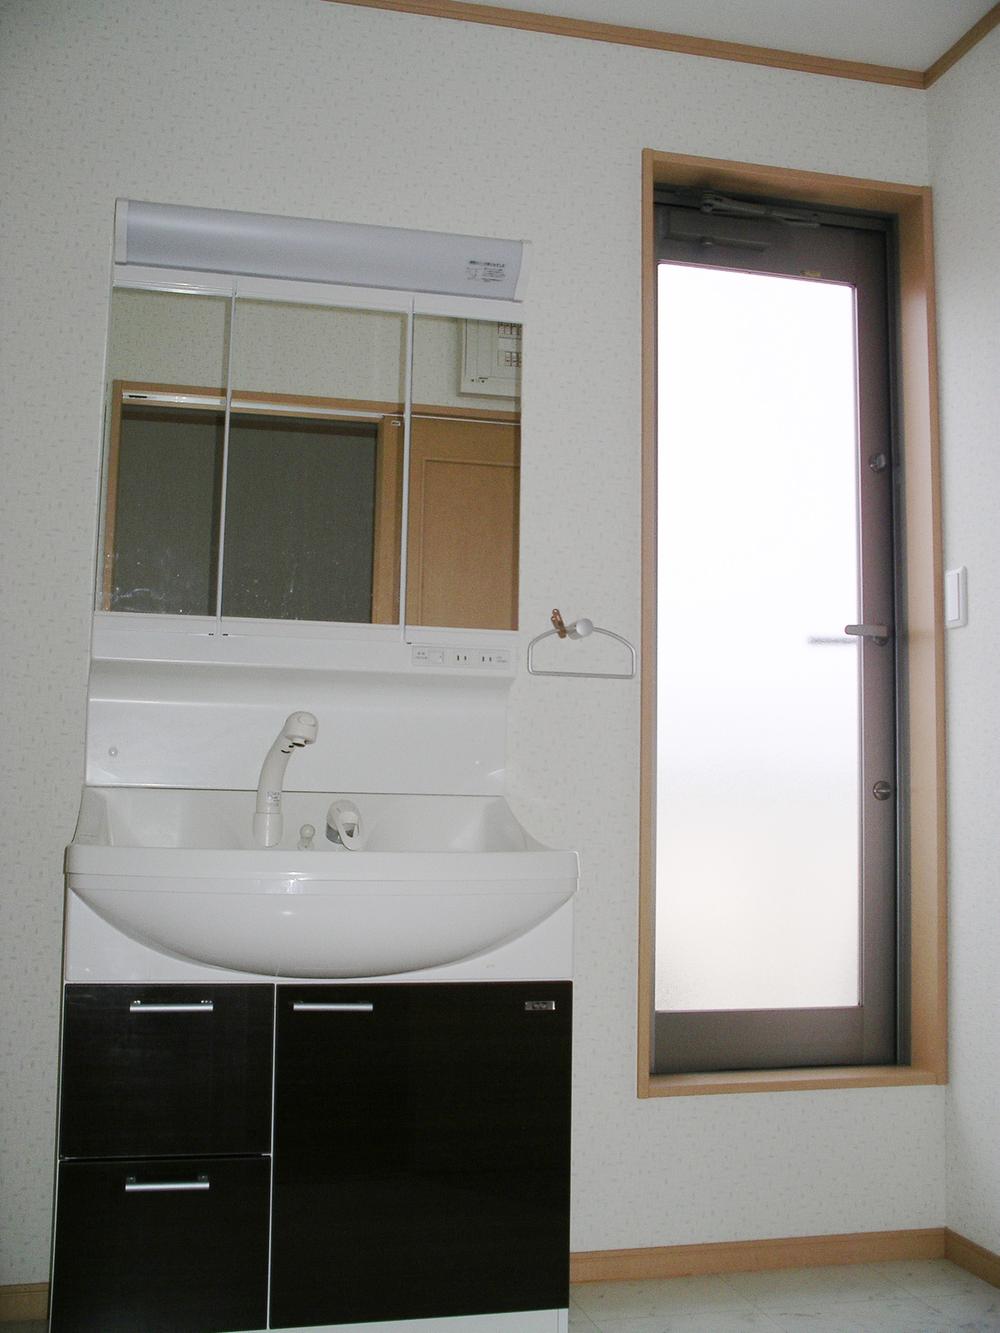 Wash basin, toilet. 2F washroom ・ Balcony back door